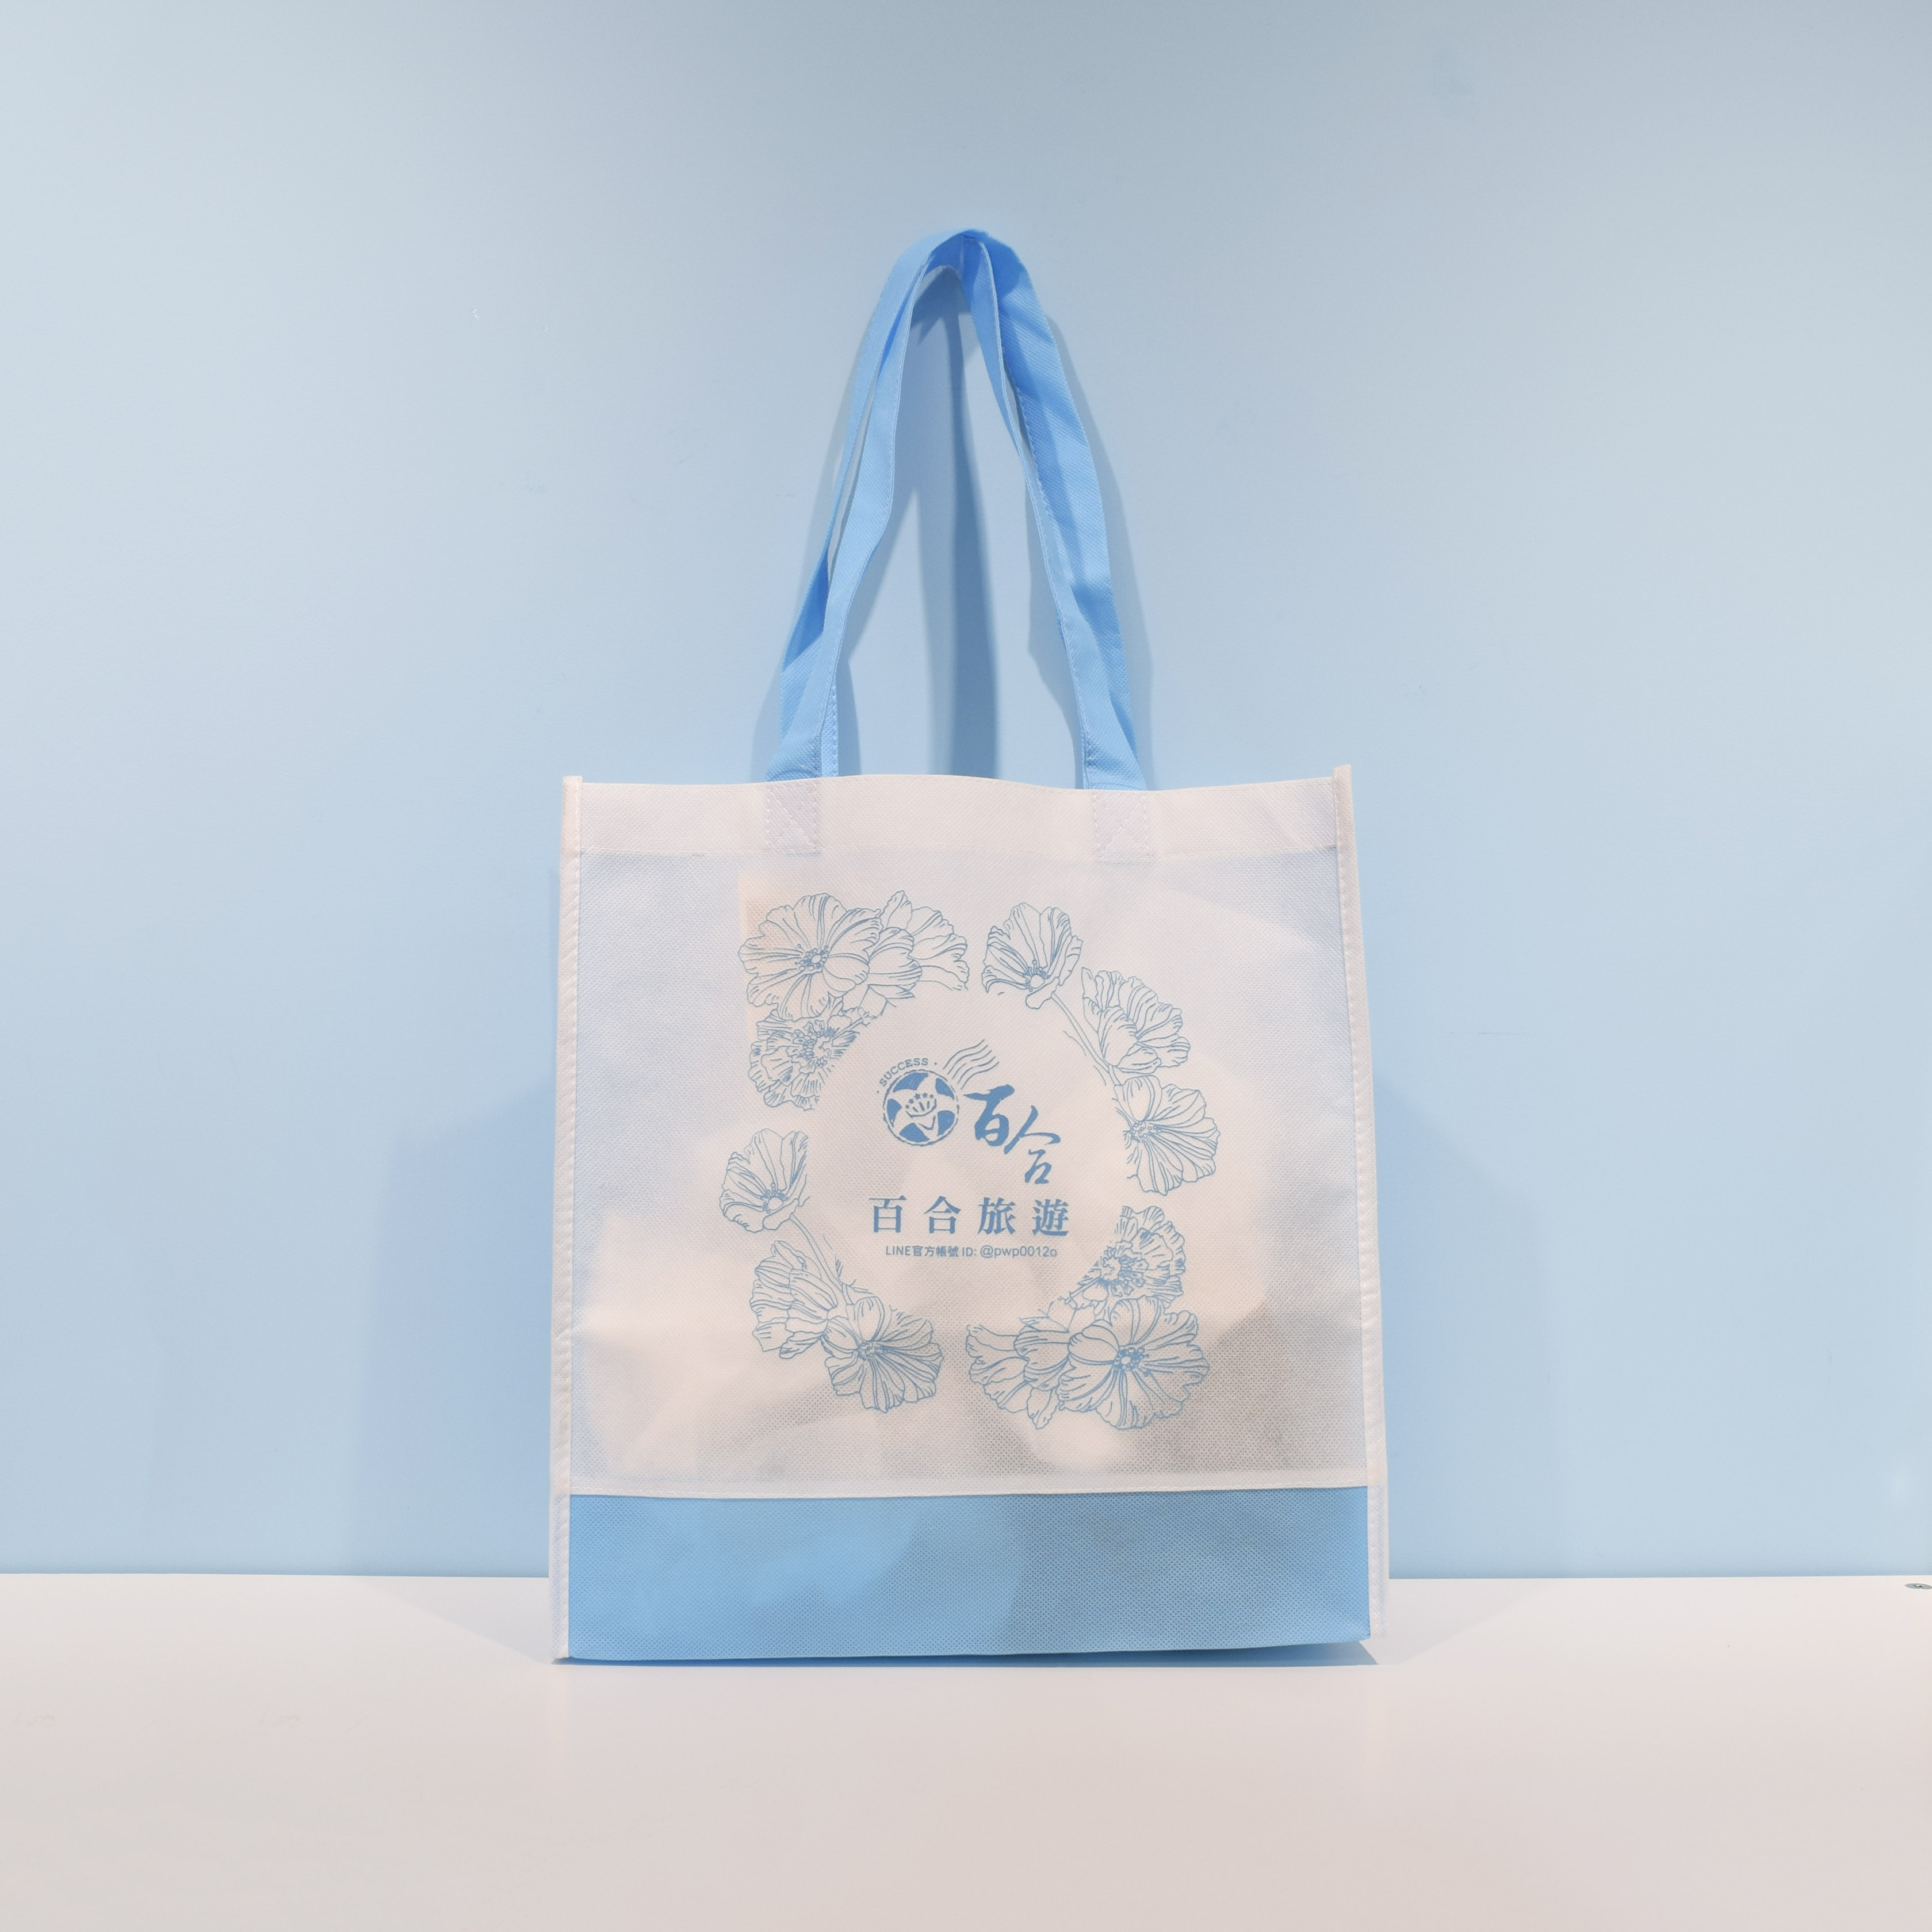 【客製商品】不織布 環保袋 - 藍/白色 拼布 C0030